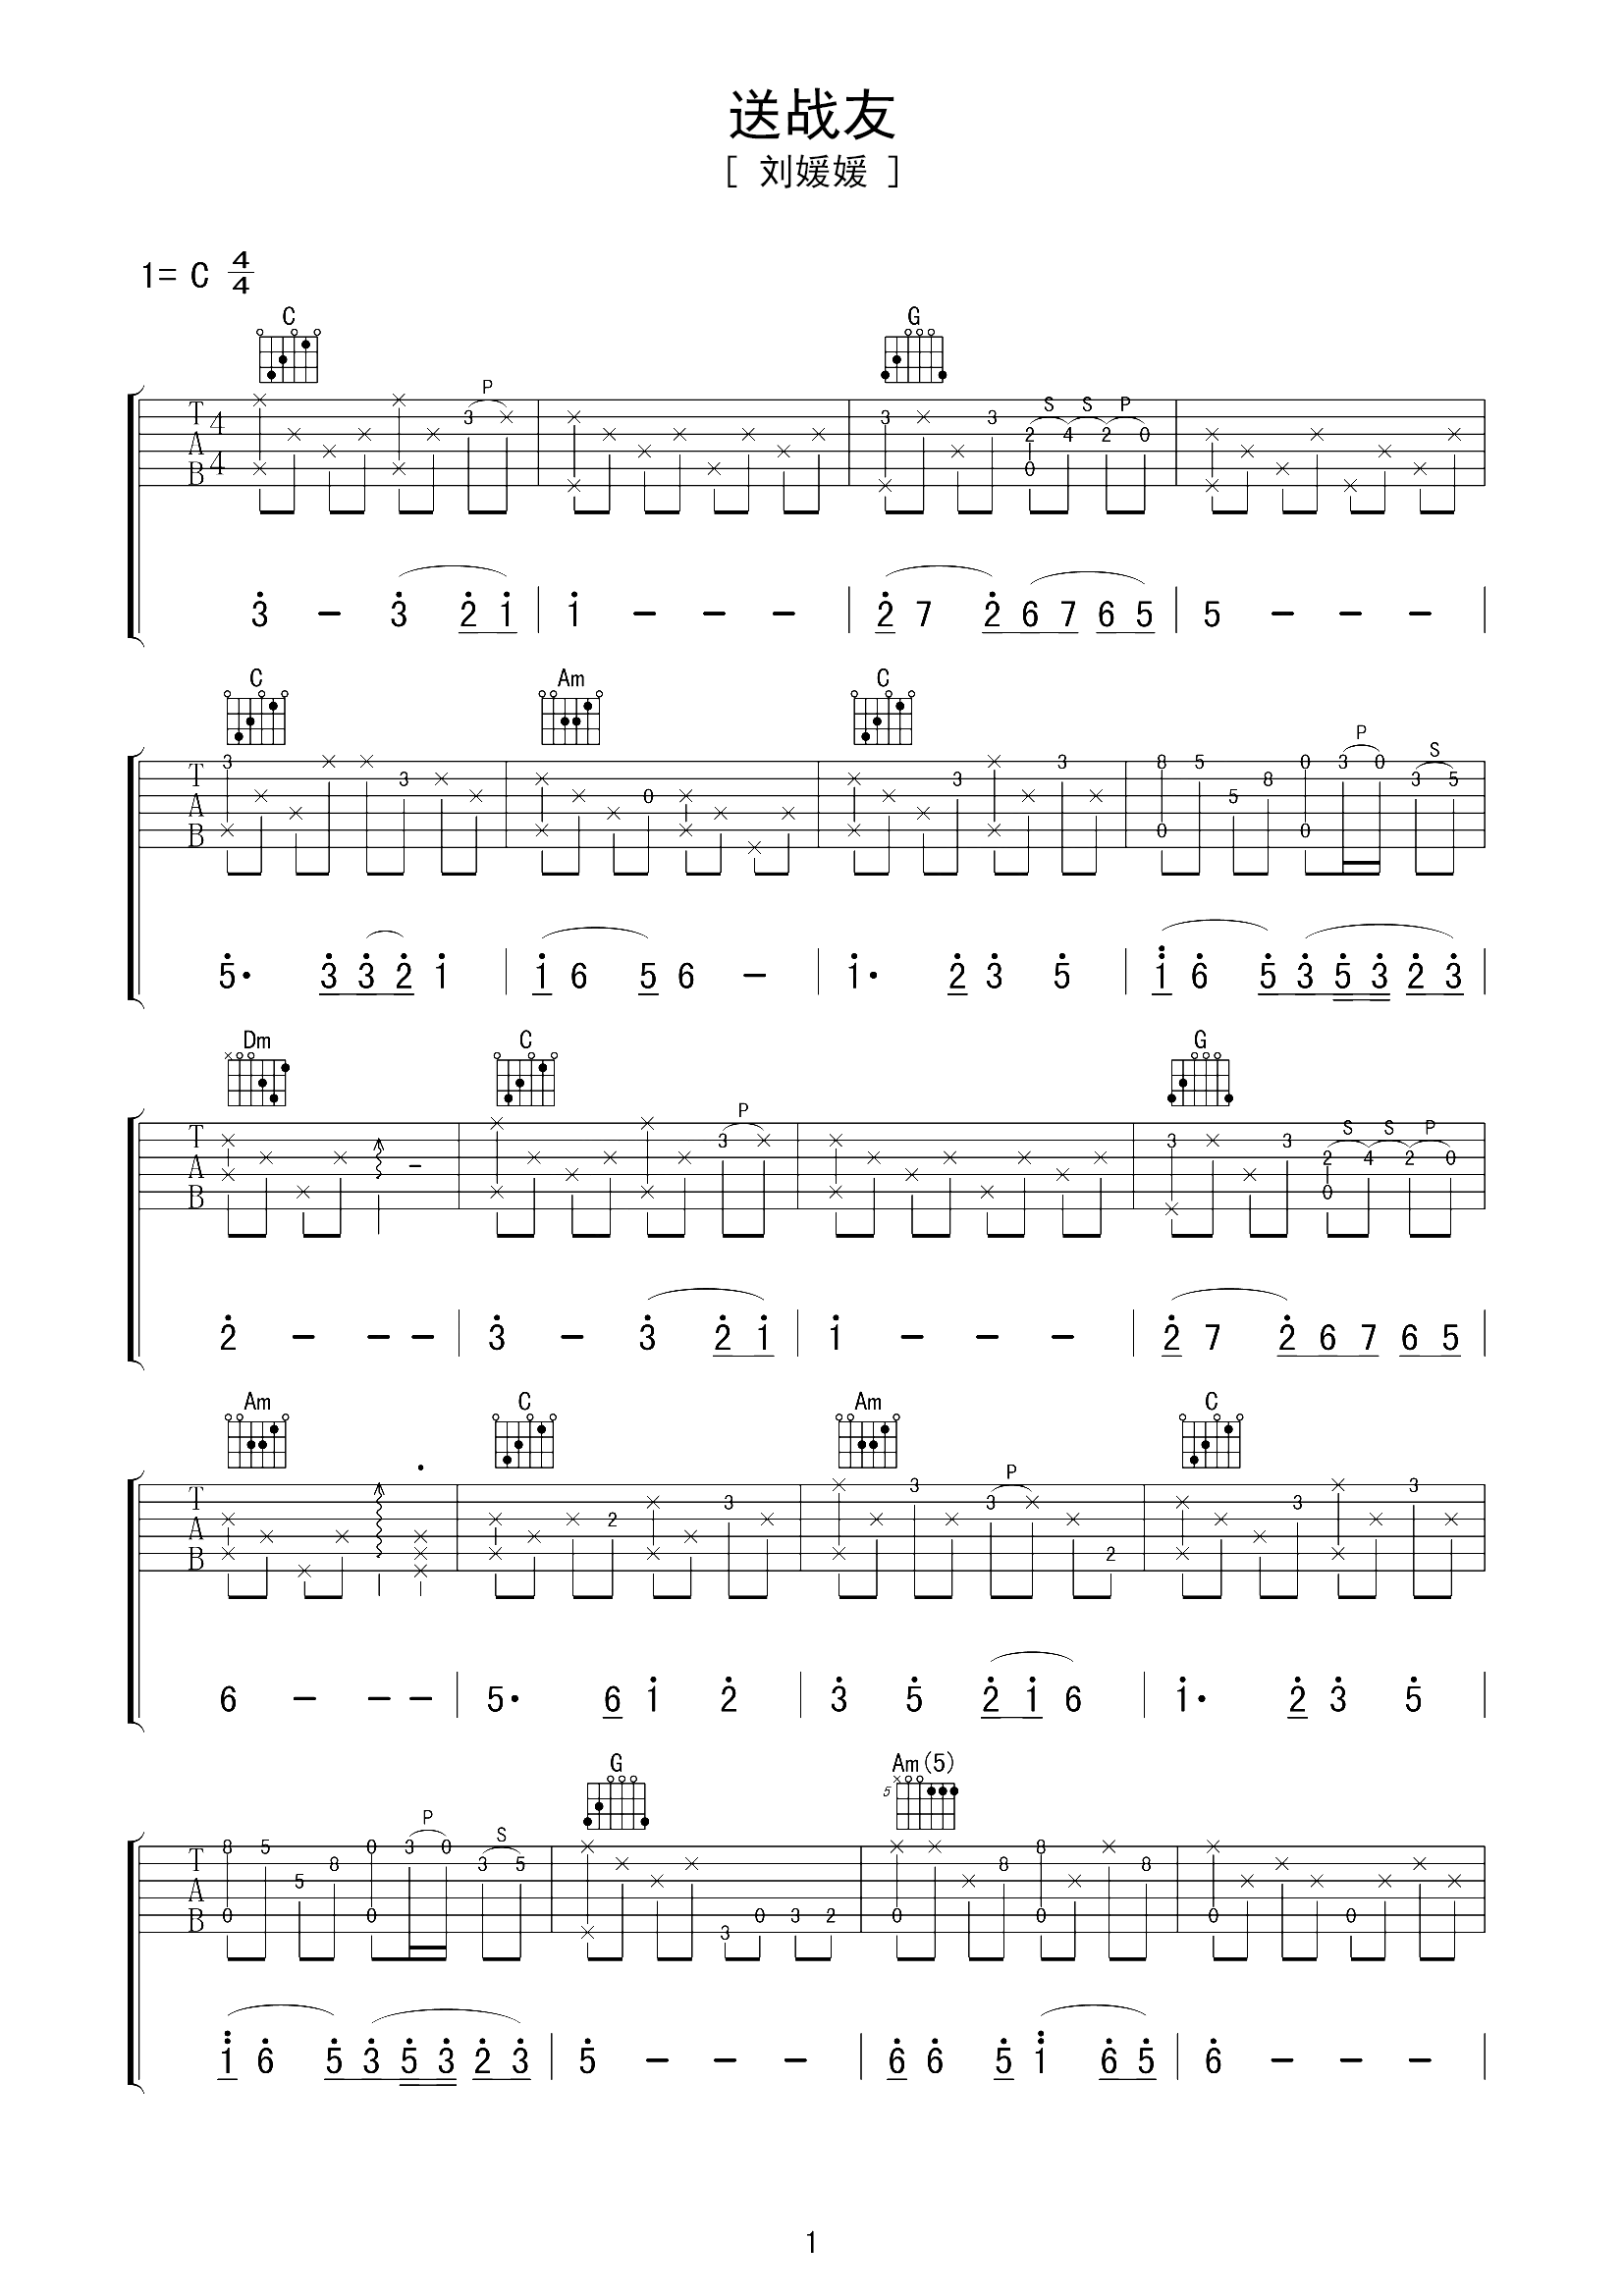 初学扫弦节奏型《循环的太阳》吉他谱 - C调六线谱初级版 - 易谱库